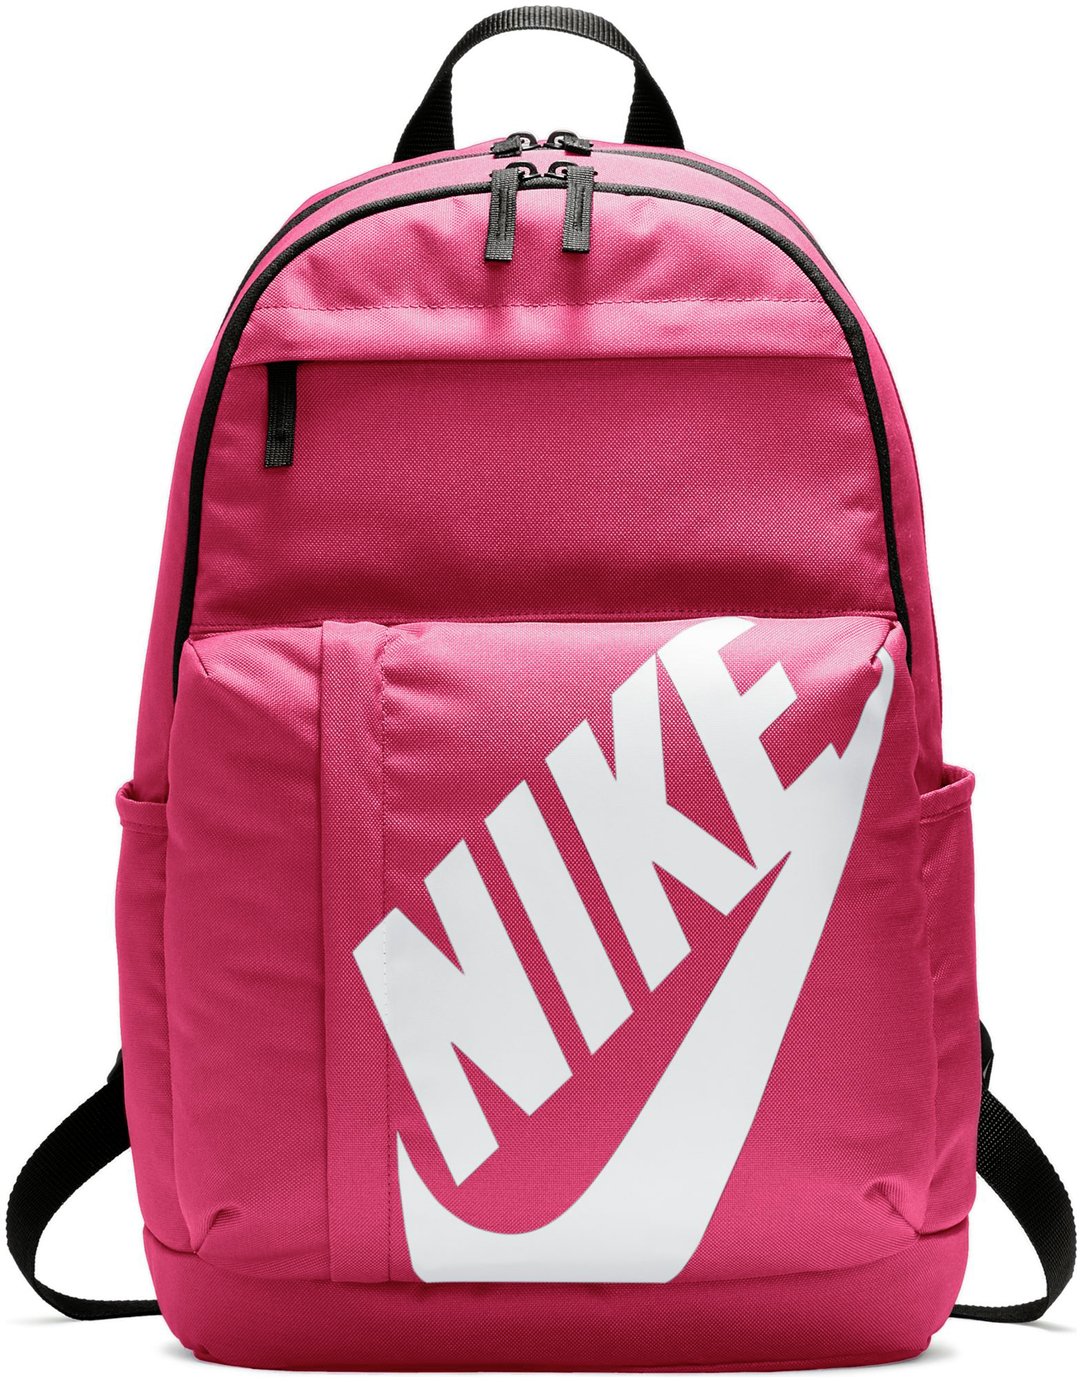 Nike Elemental Backpack Reviews